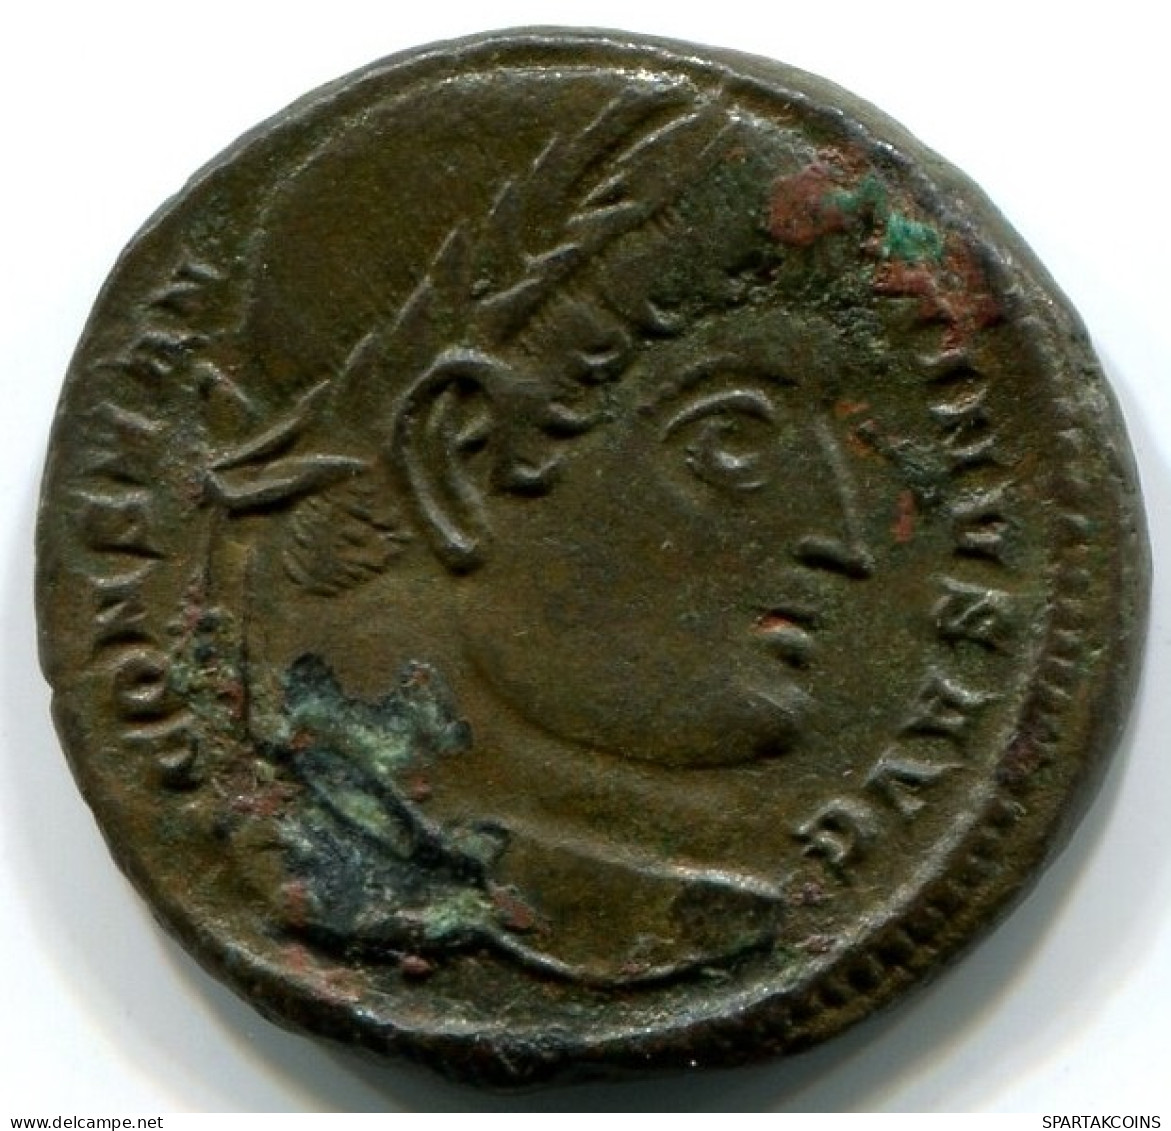 CONSTANTINE I Trier Mint PTR AD 325-326 PROVIDENTIA AVGG Campgate #ANC12453.15.D.A - L'Empire Chrétien (307 à 363)